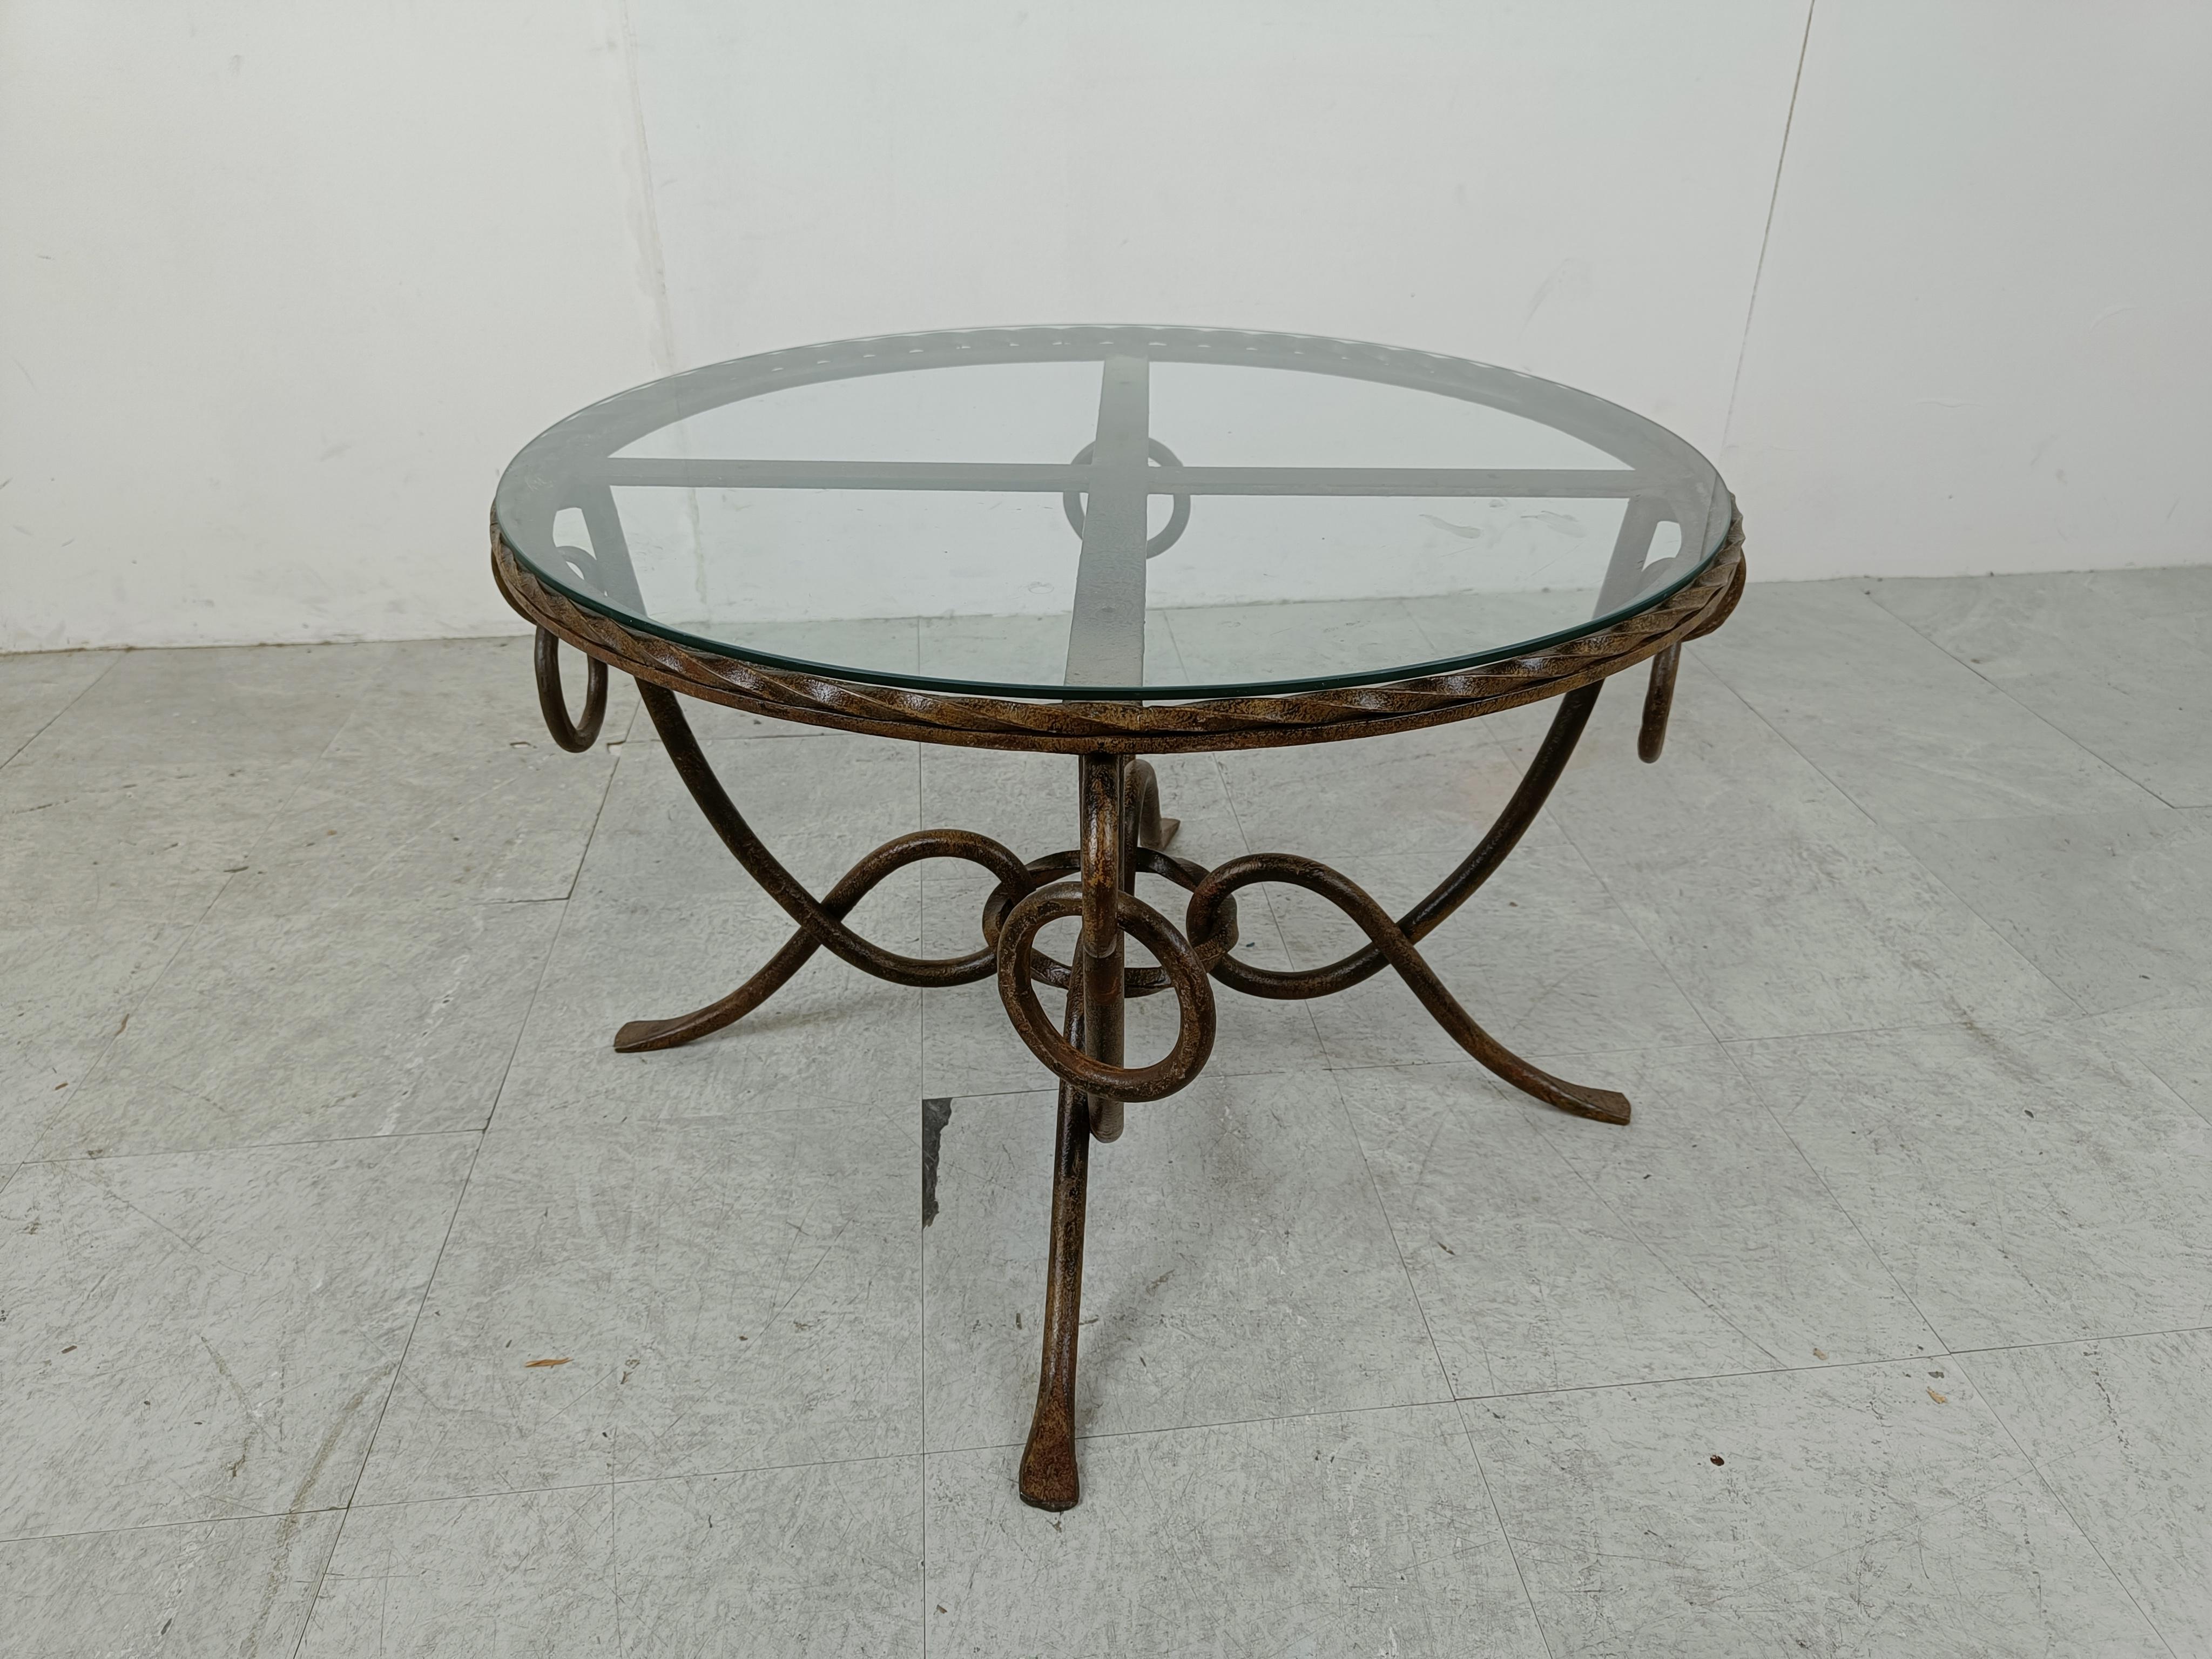 Table basse vintage conçue par René Drouet (1899-1993).

La table a une base en fer forgé doré et un plateau en verre.

Grand savoir-faire.

Années 1940 - France

Dimensions :
Hauteur : 47cm/18.50